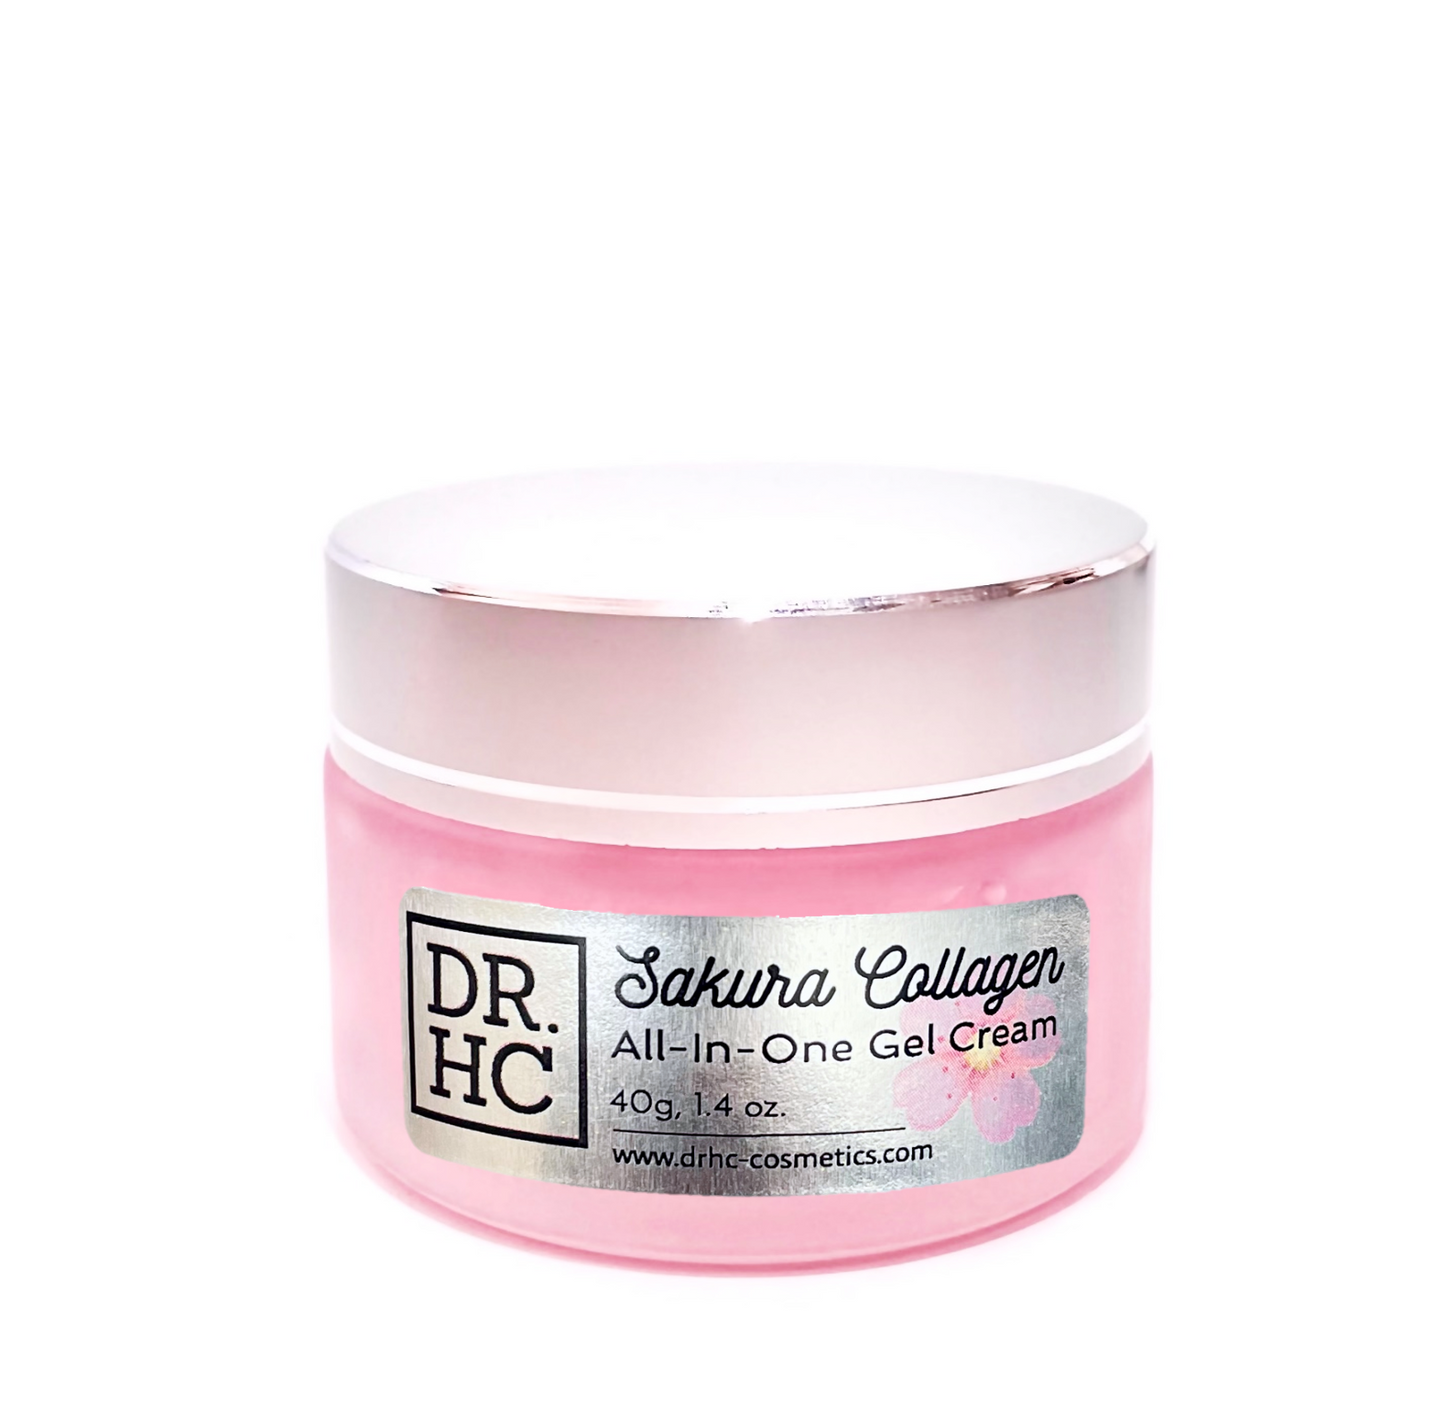 DR.HC Sakura Collagen All-In-One Gel Cream (25~40g, 0.9~1.4oz.) (Collagen support, Skin firming, Brightening, Anti-scar...)-4